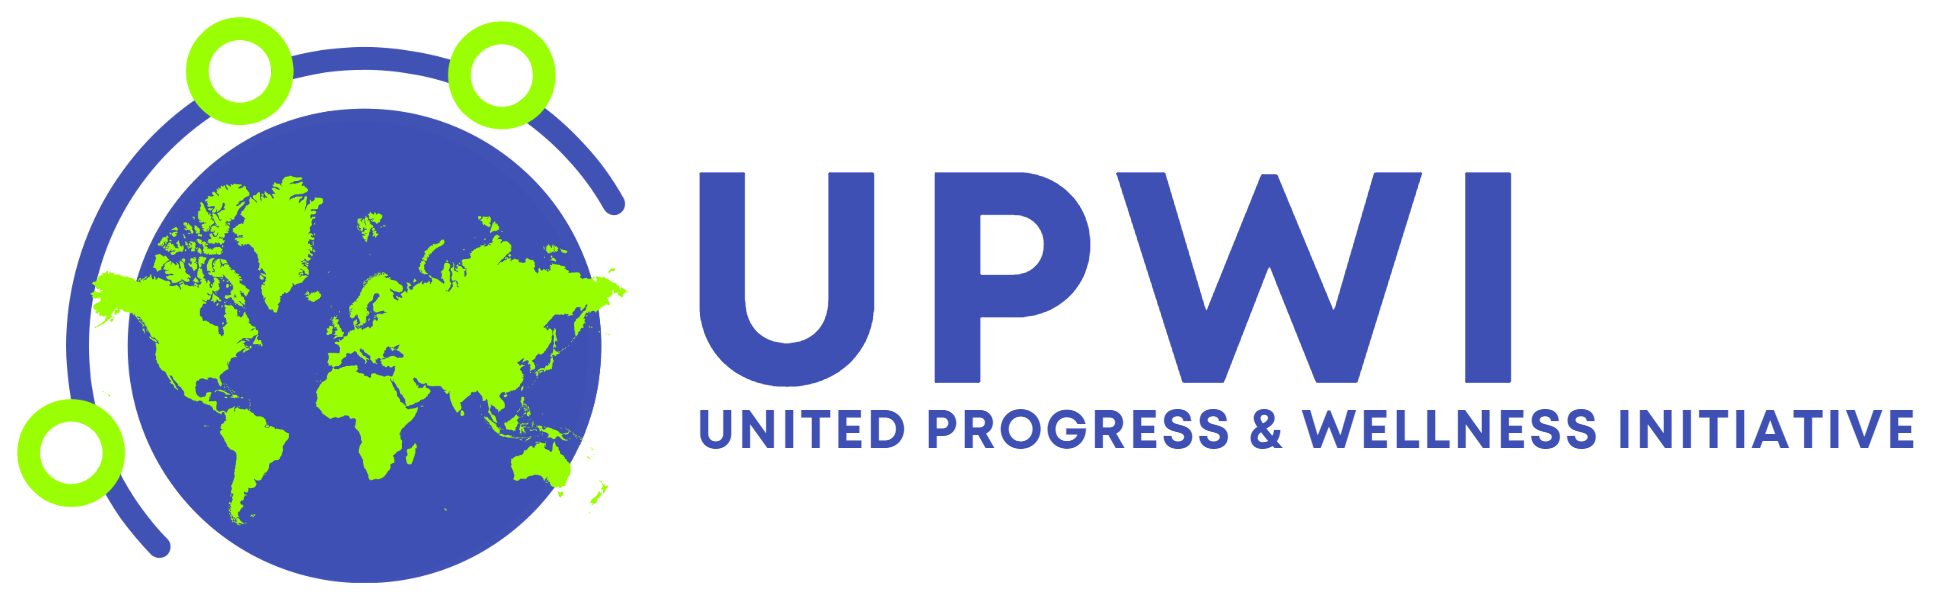 UPWI Logo